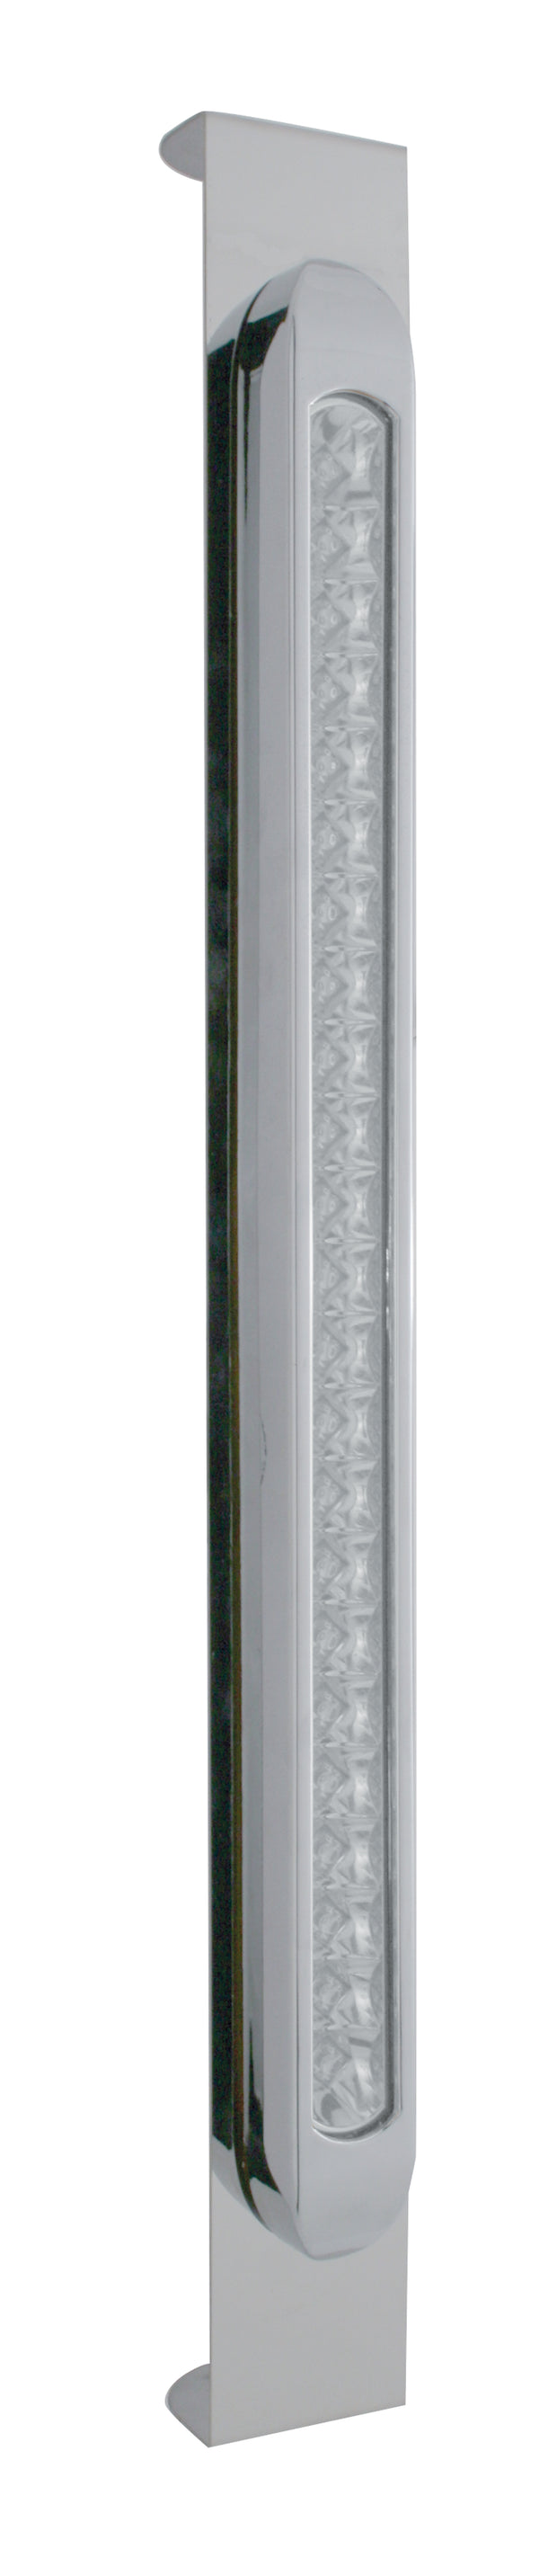 Mirror Bracket w/ 23 LED 17 1/4" Light Bar & Bezel - Amber LED/Clear Lens